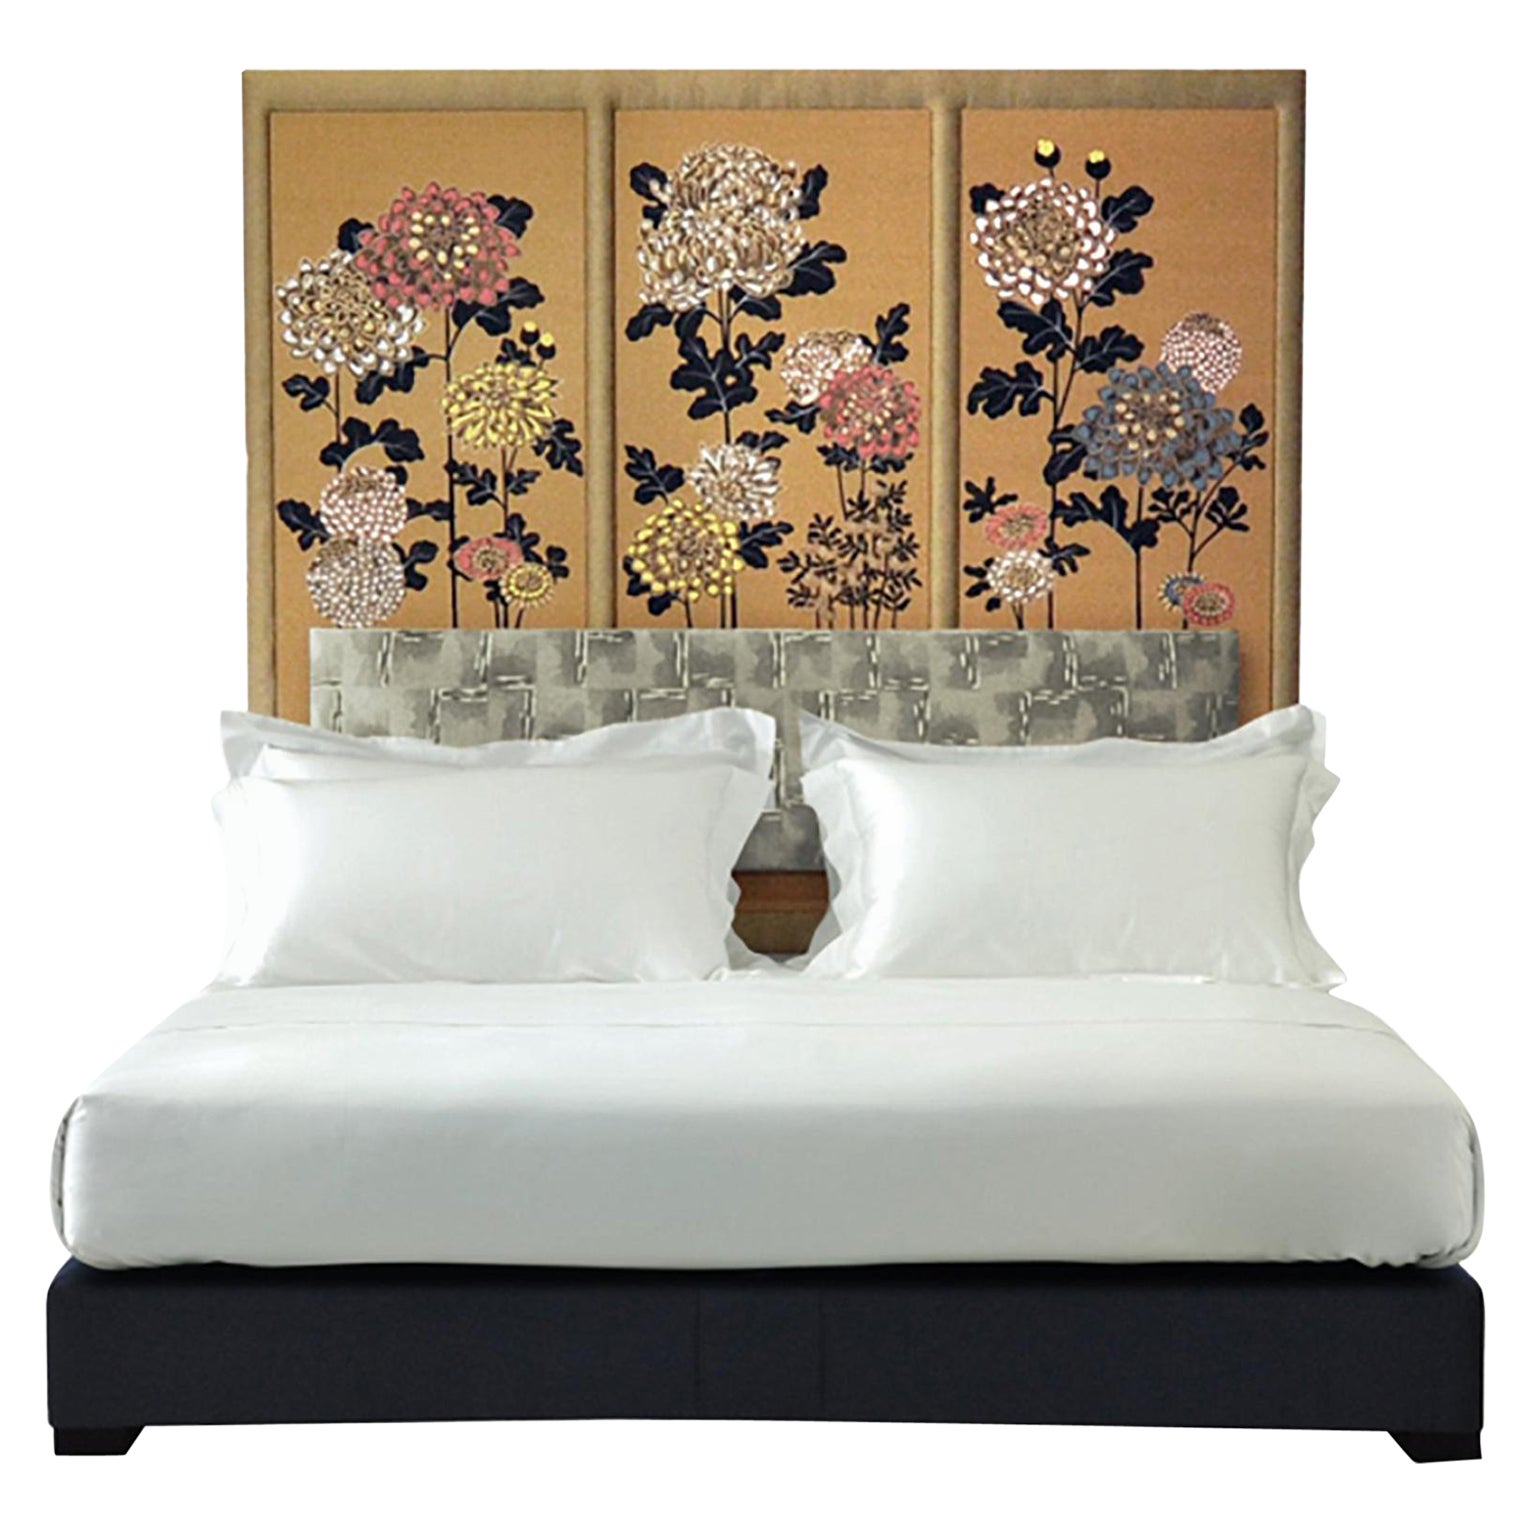 Bespoke Savoir Kiku Headboard & Nº3 Bed Set, Eastern King Size, by Fromental For Sale